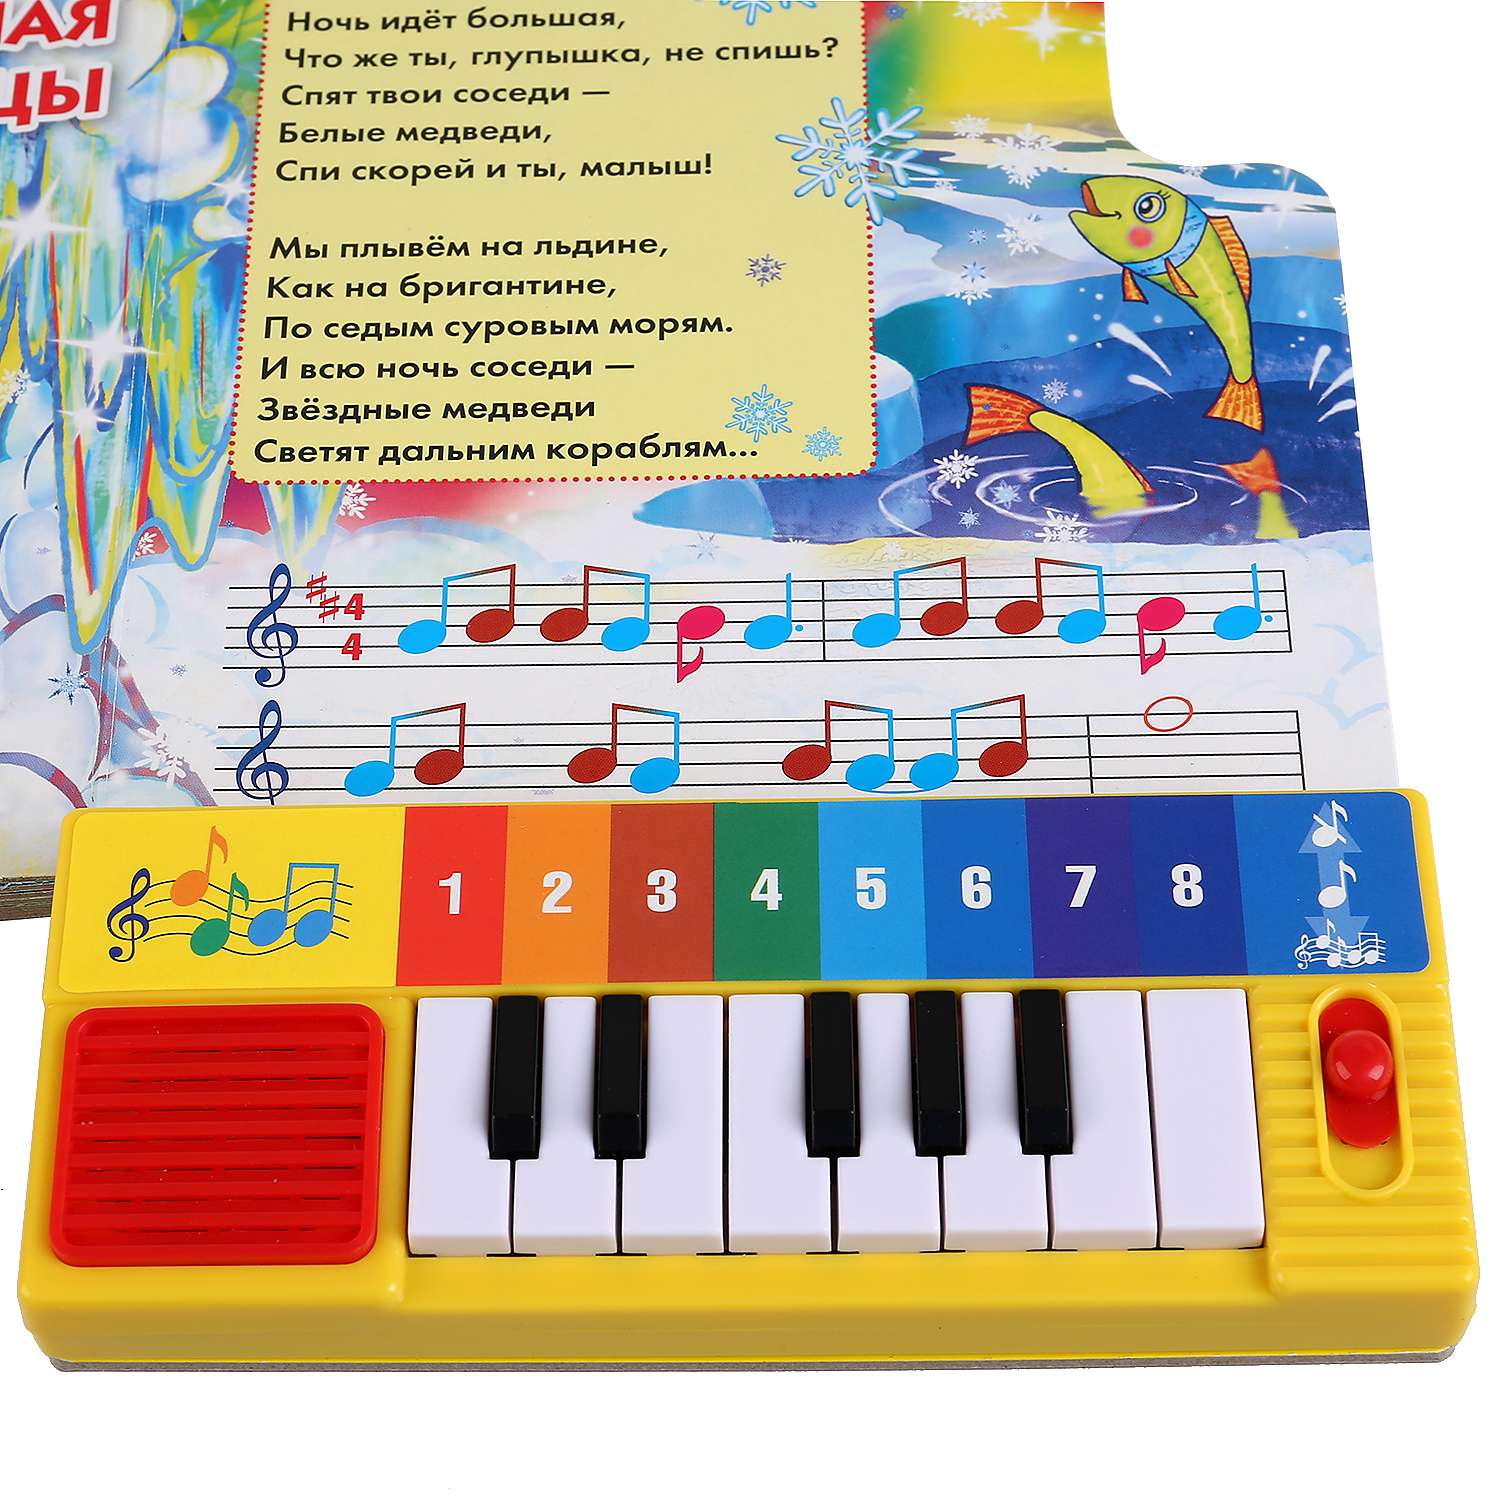 Детская песня 1 5 года. Книга пианино для малышей. Книжка с пианино для малышей. Музыкальная книжка пианино для малышей. Музыкальные книги для детей.